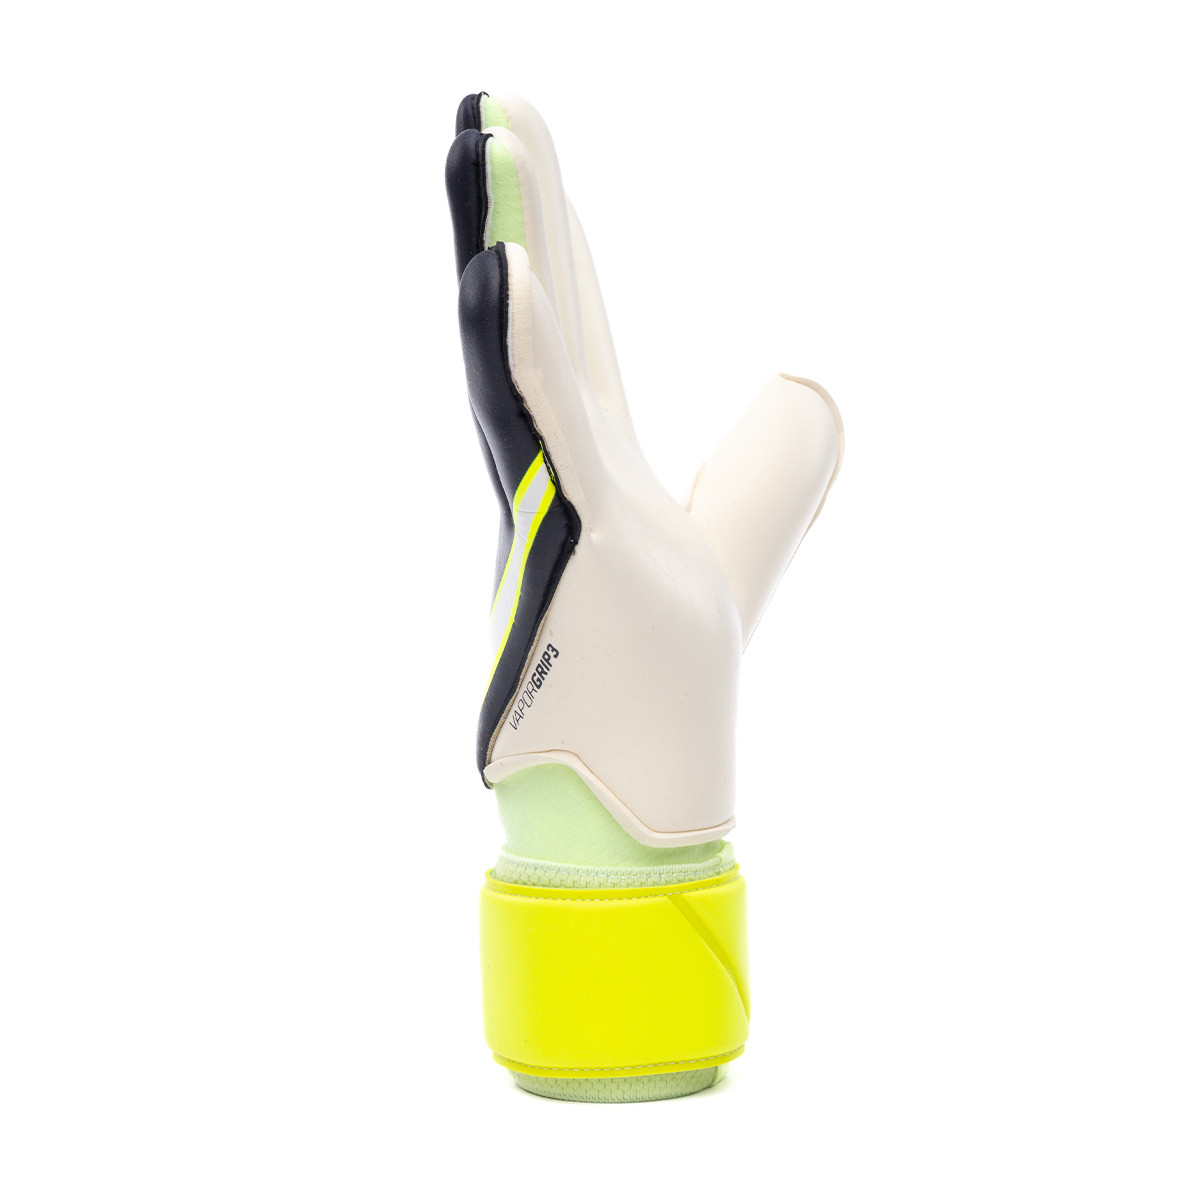 Gant Nike Grip3 Gridiron-Barely Volt-White - Fútbol Emotion